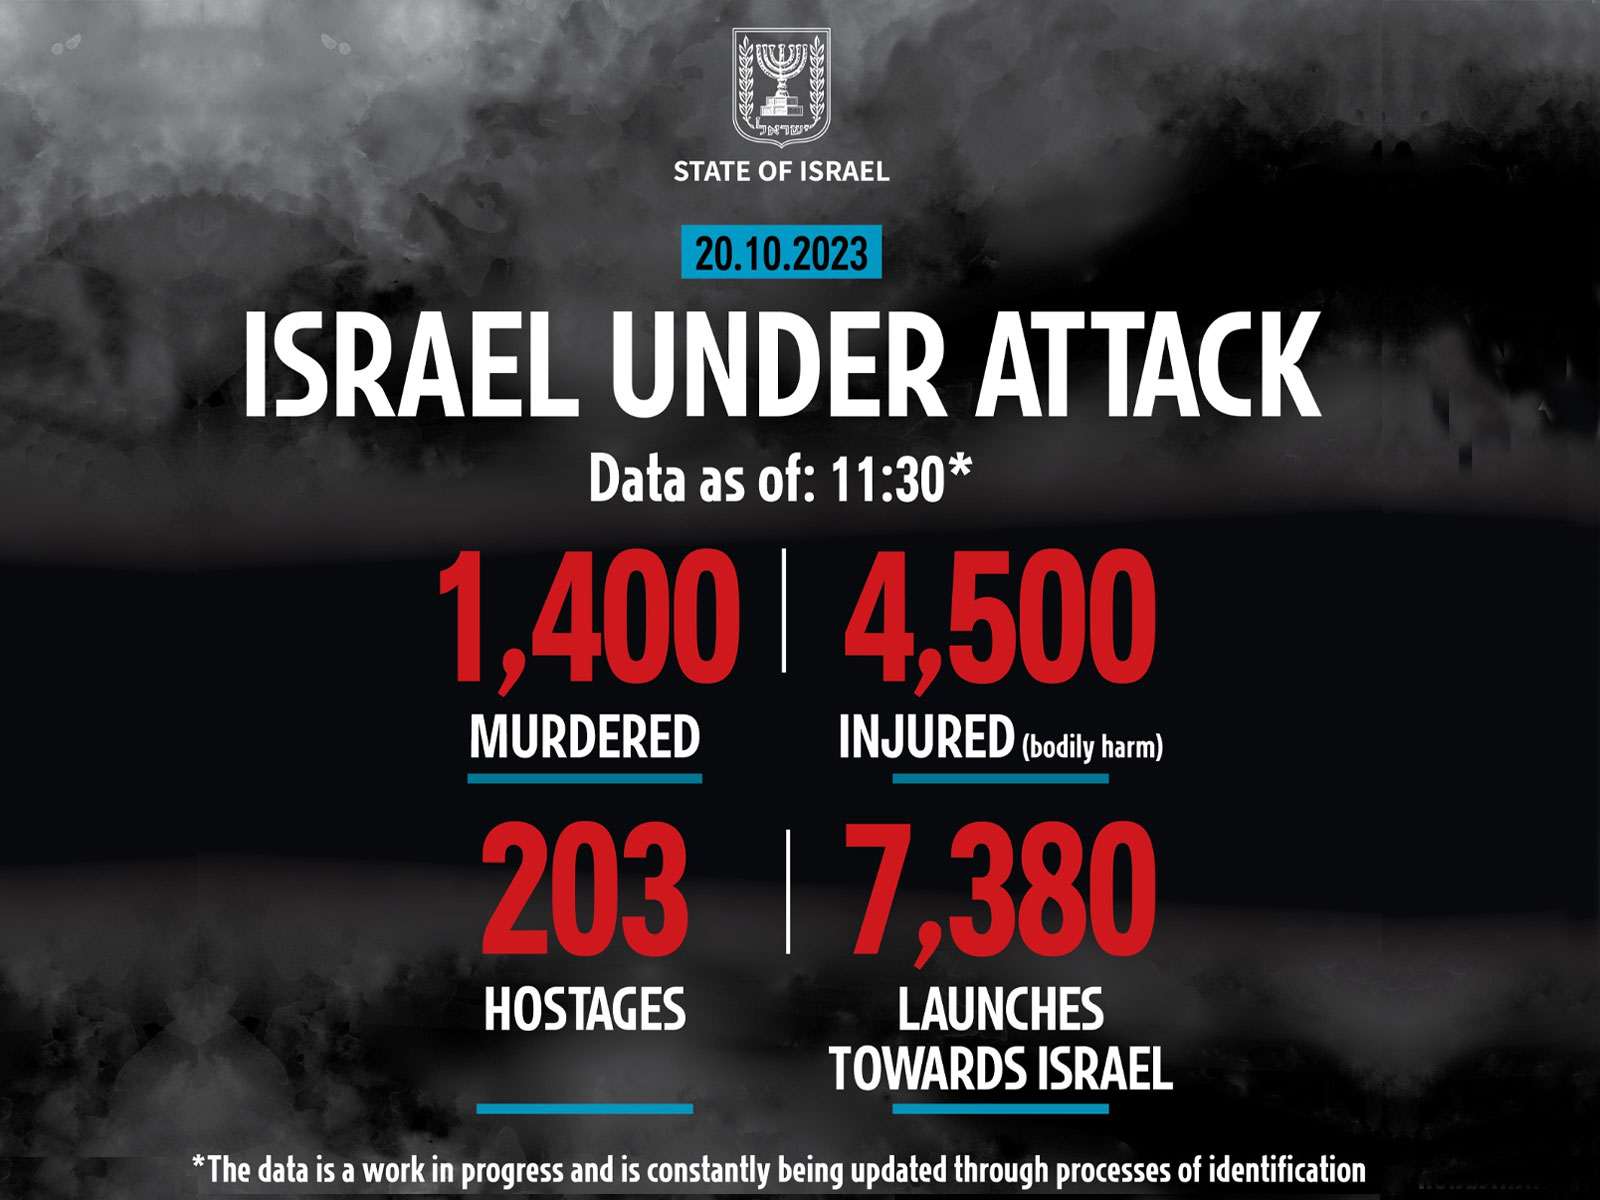 Israel under attack data as of October 20, 2023